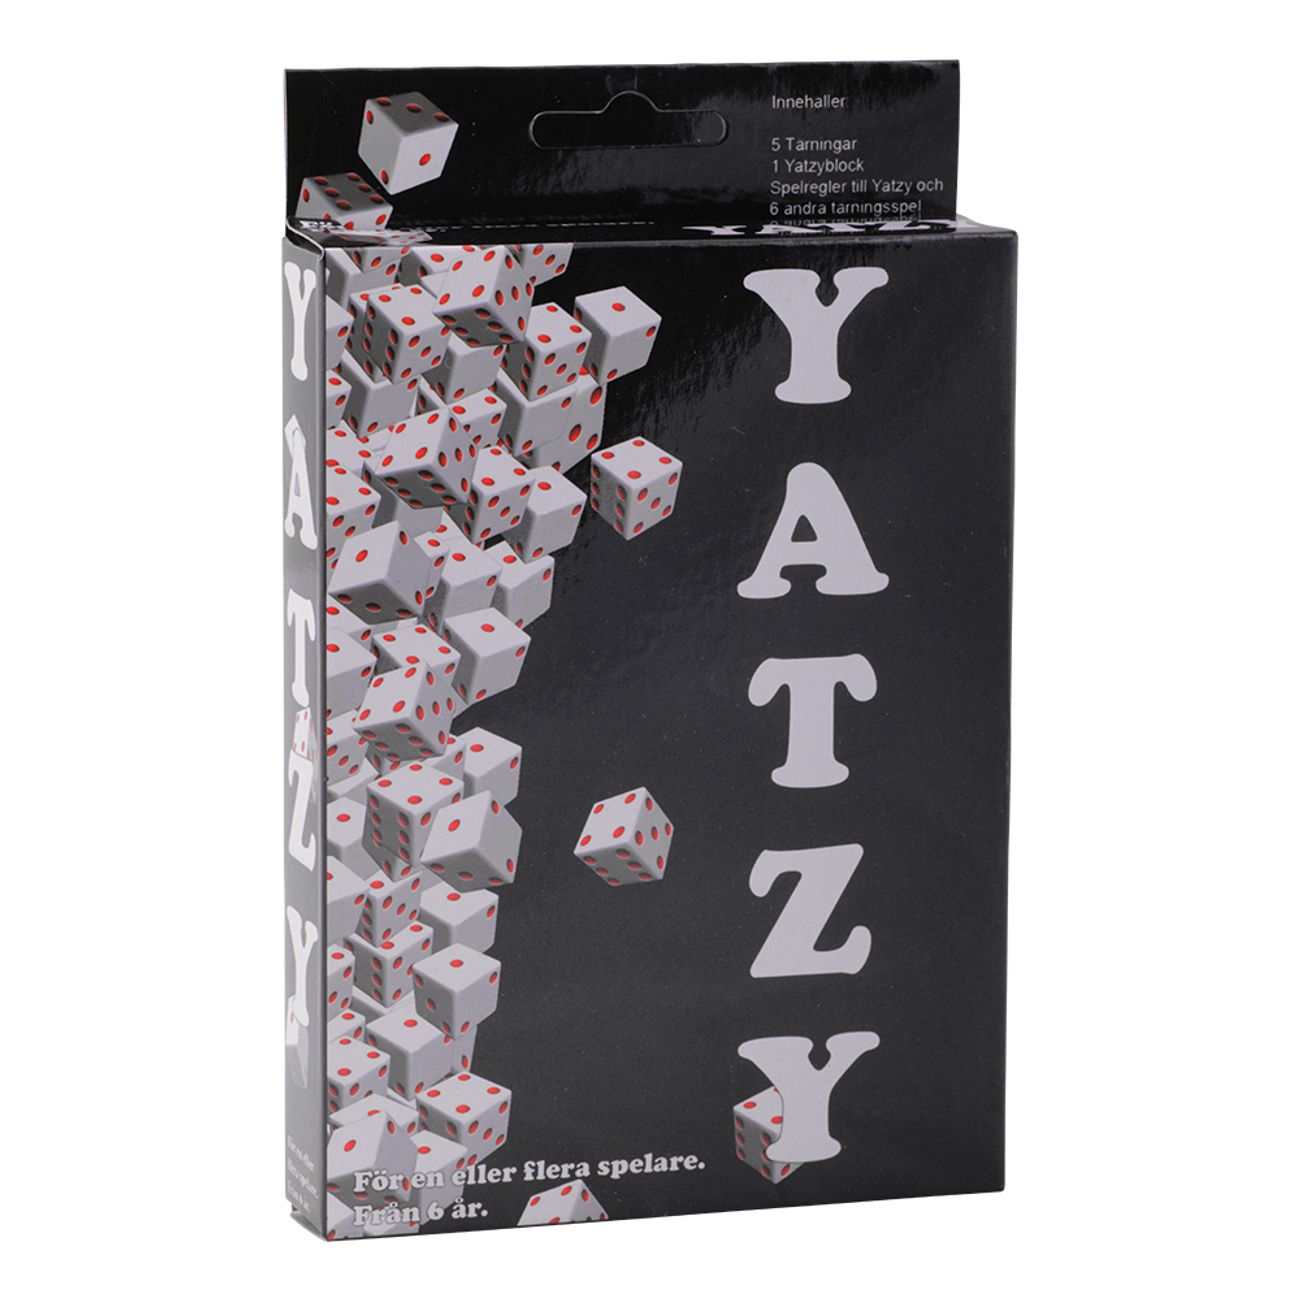 yatzy-spel-1